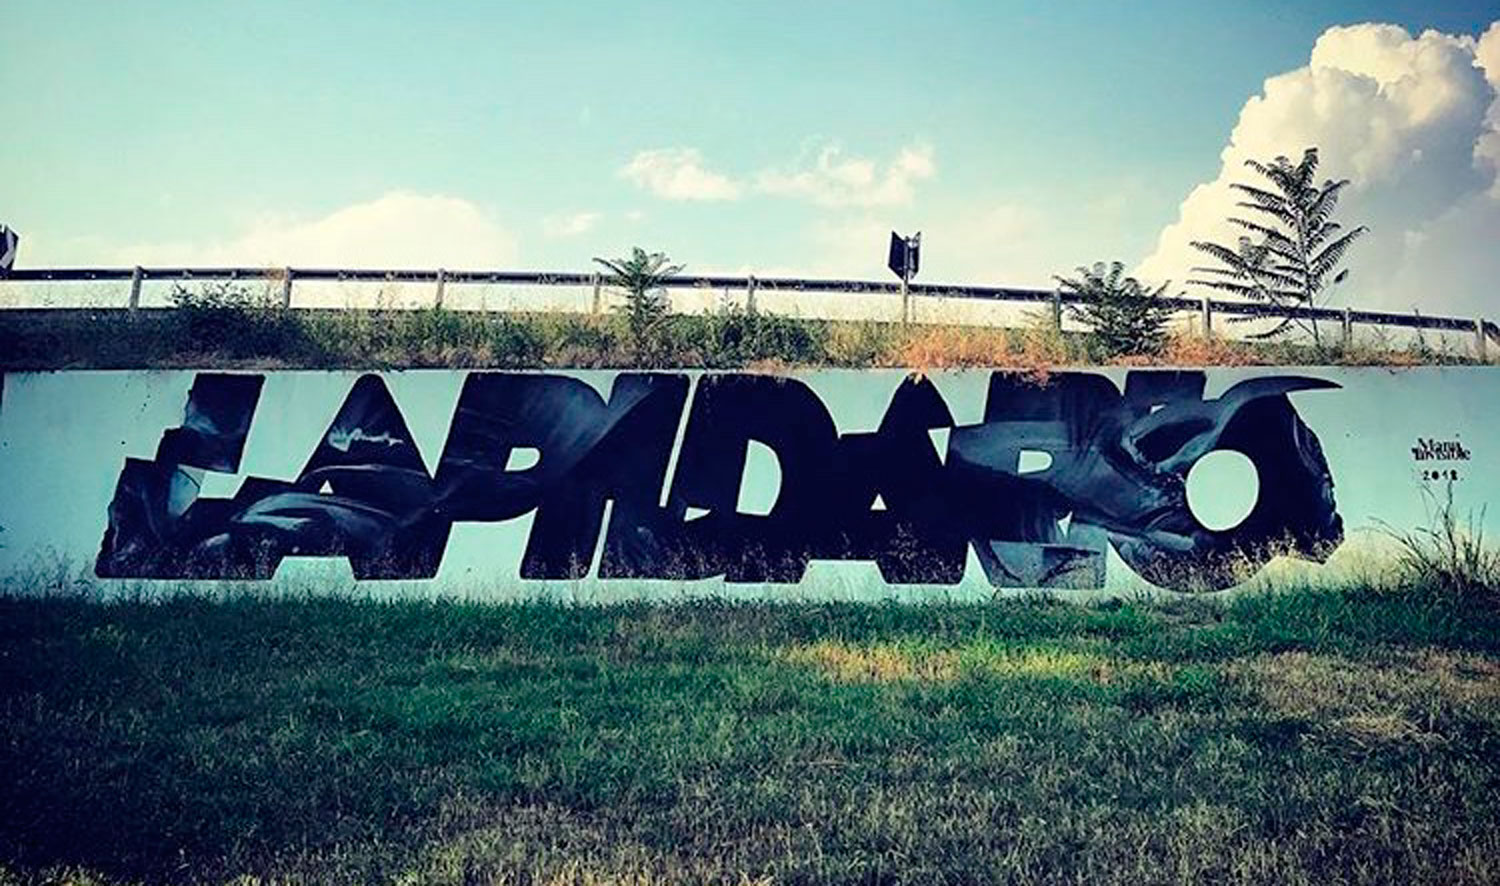 ''Lapidario'' Quartz and spray sur le mur 3 x 15 m Milano A7 autoroute 2018